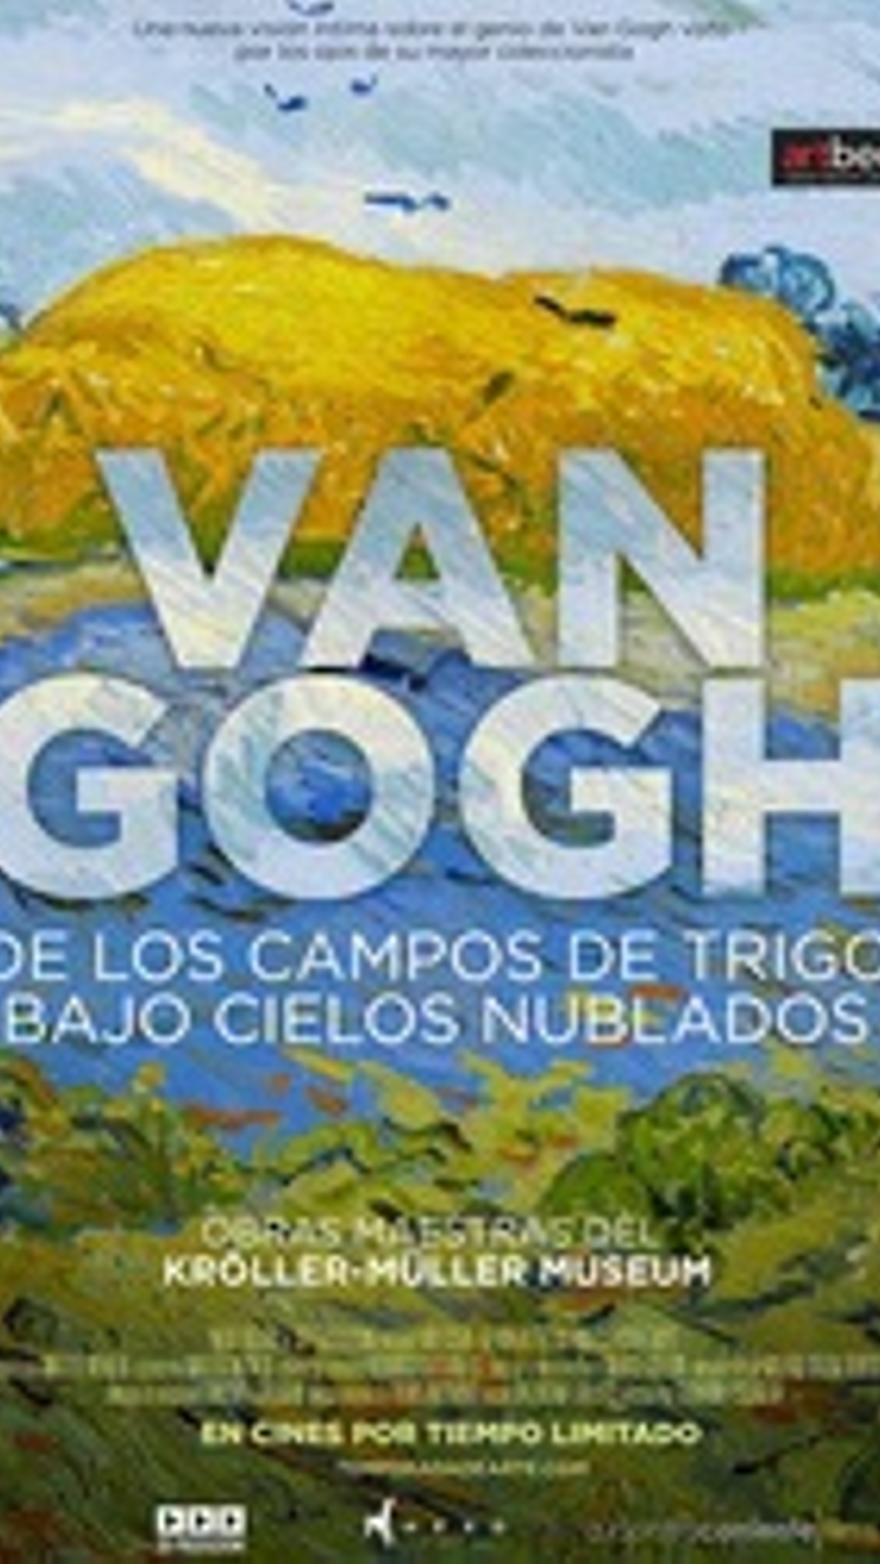 Van Gogh. De los campos de trigo bajo cielos nublados